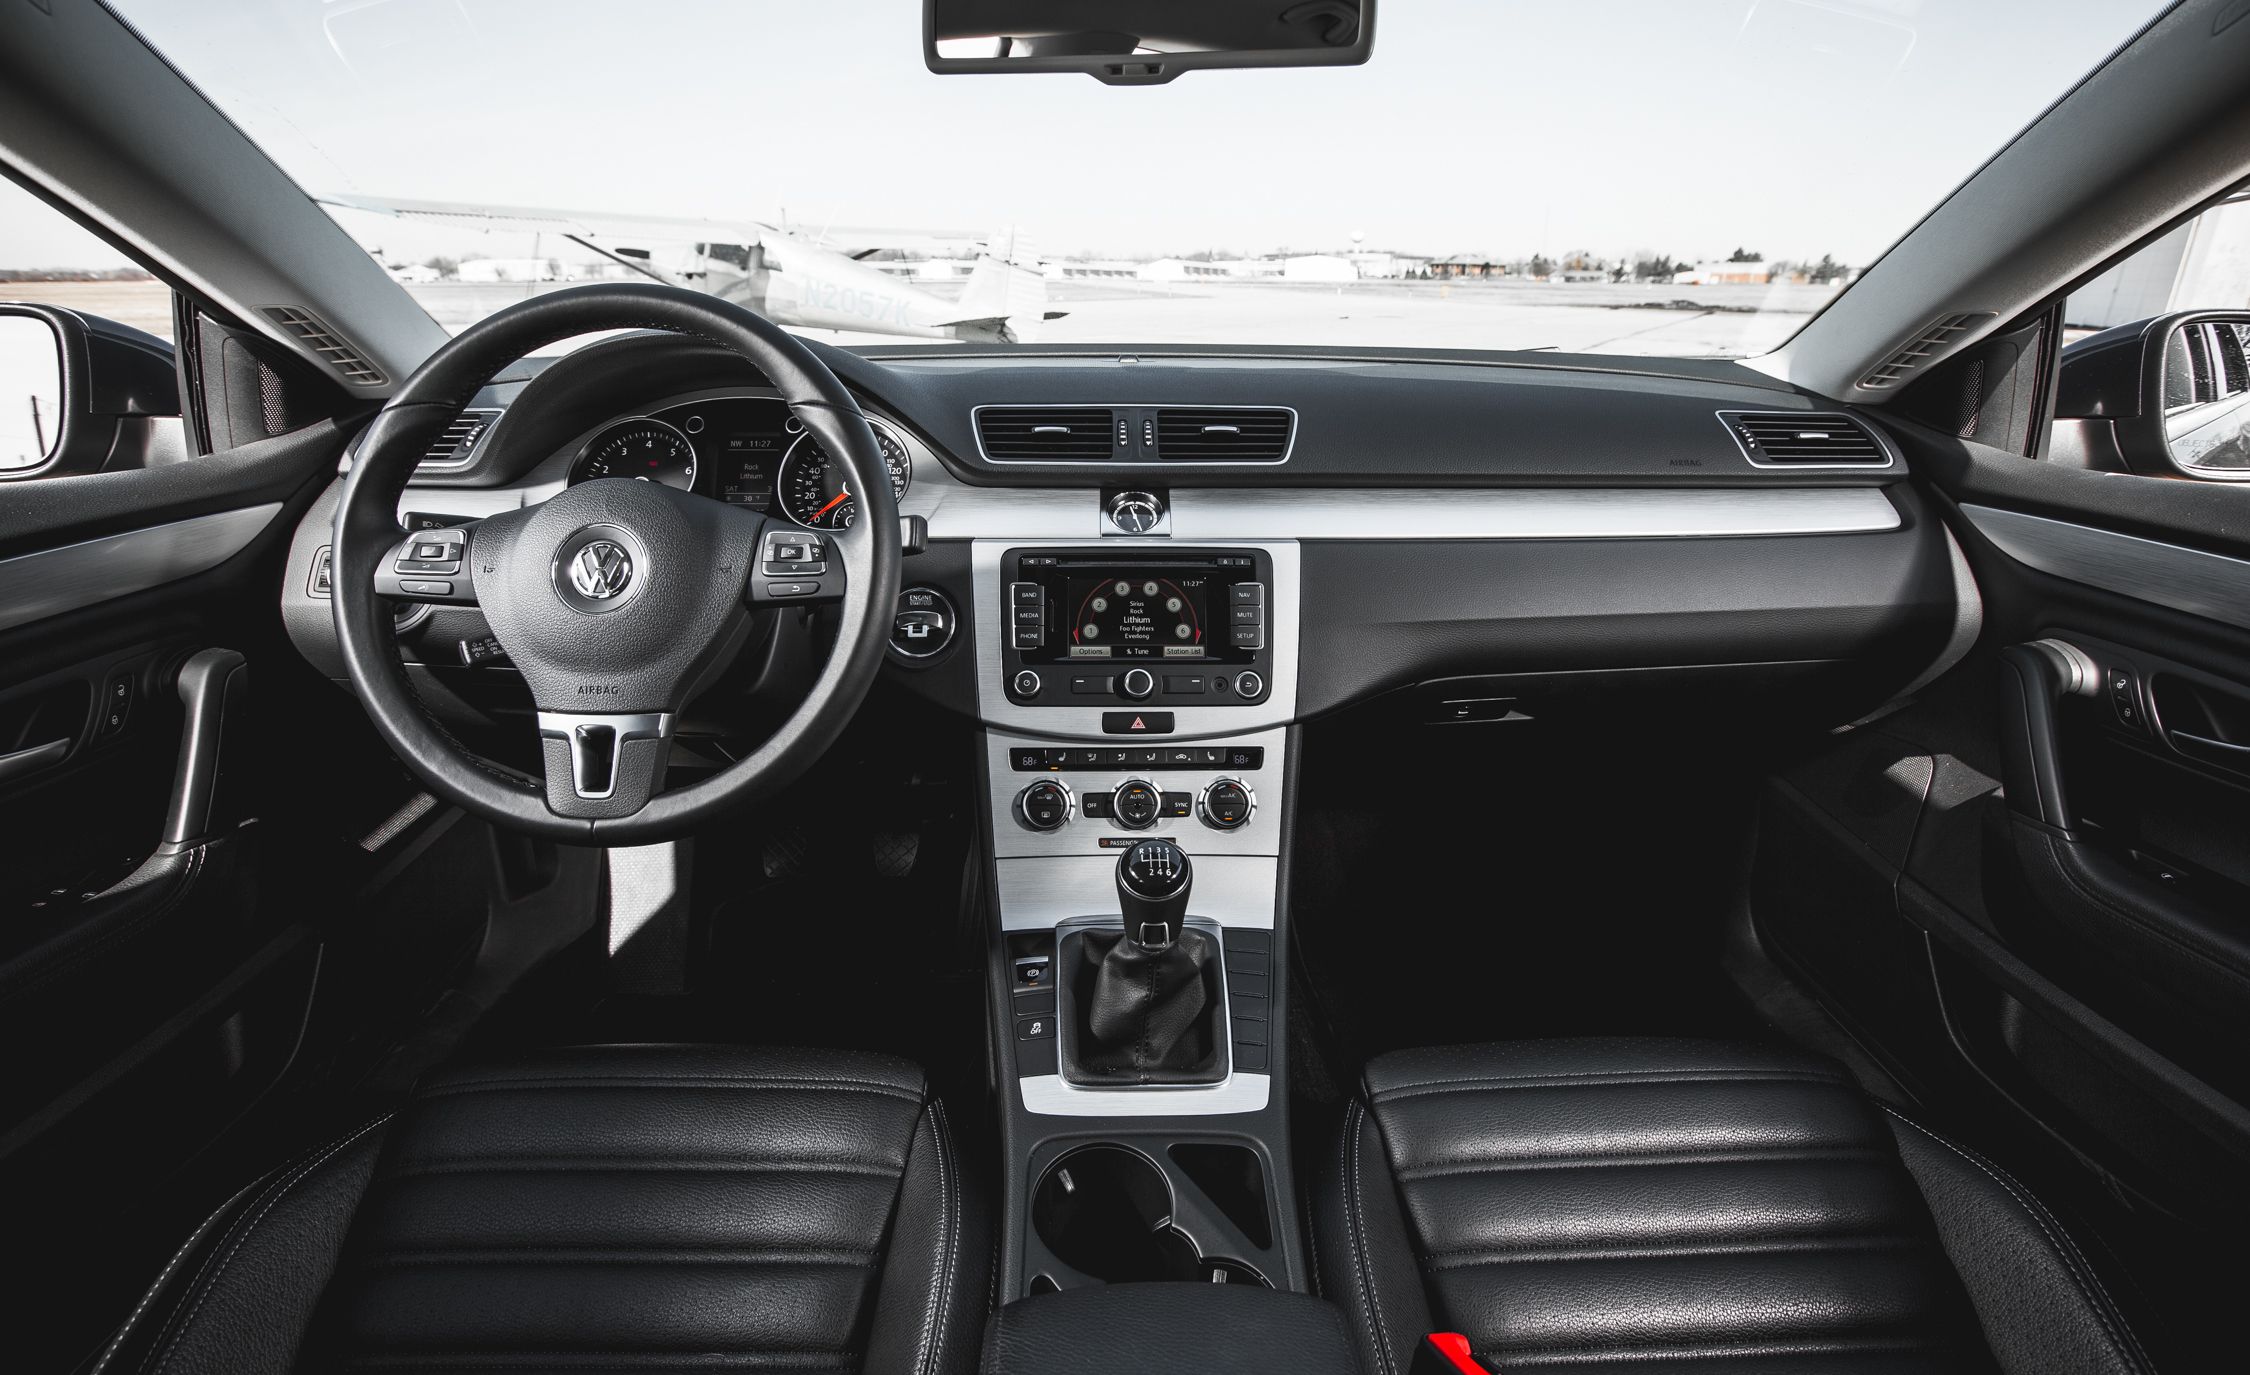 2015 Volkswagen Cc Sport Interior (View 7 of 15)